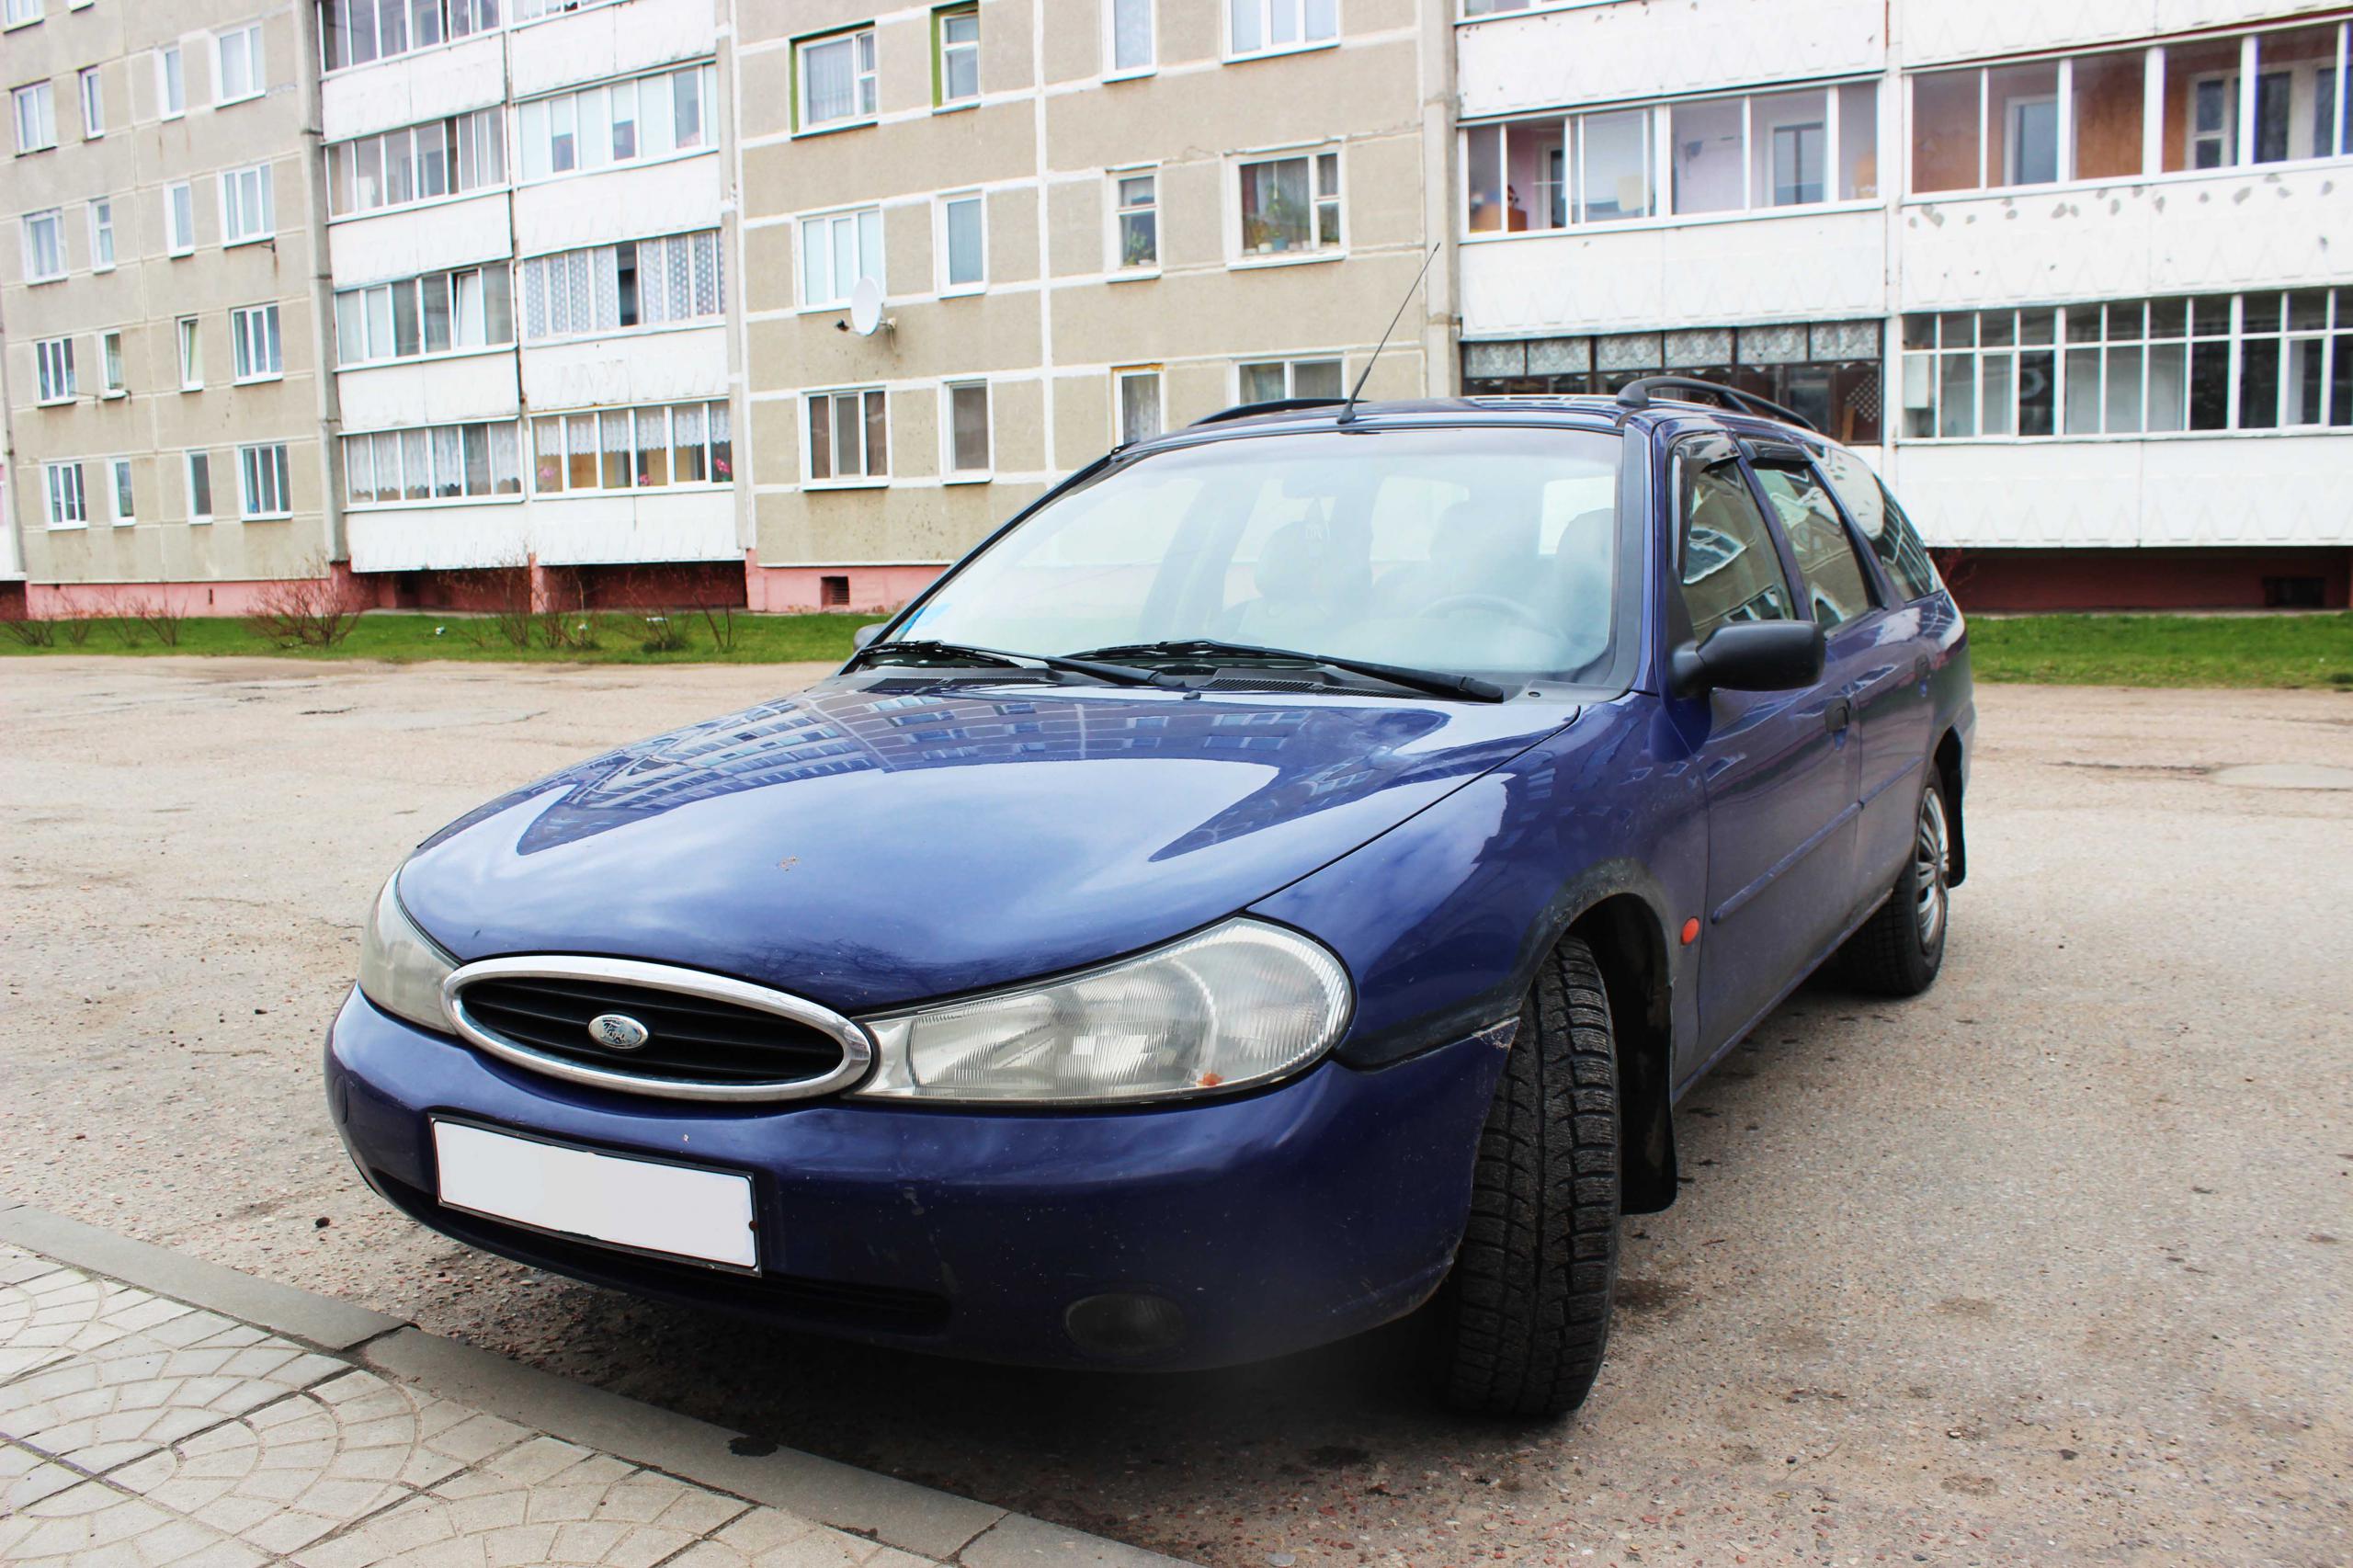 Купить б/у Ford Mondeo 1999: 25 предложений — Авто.ру